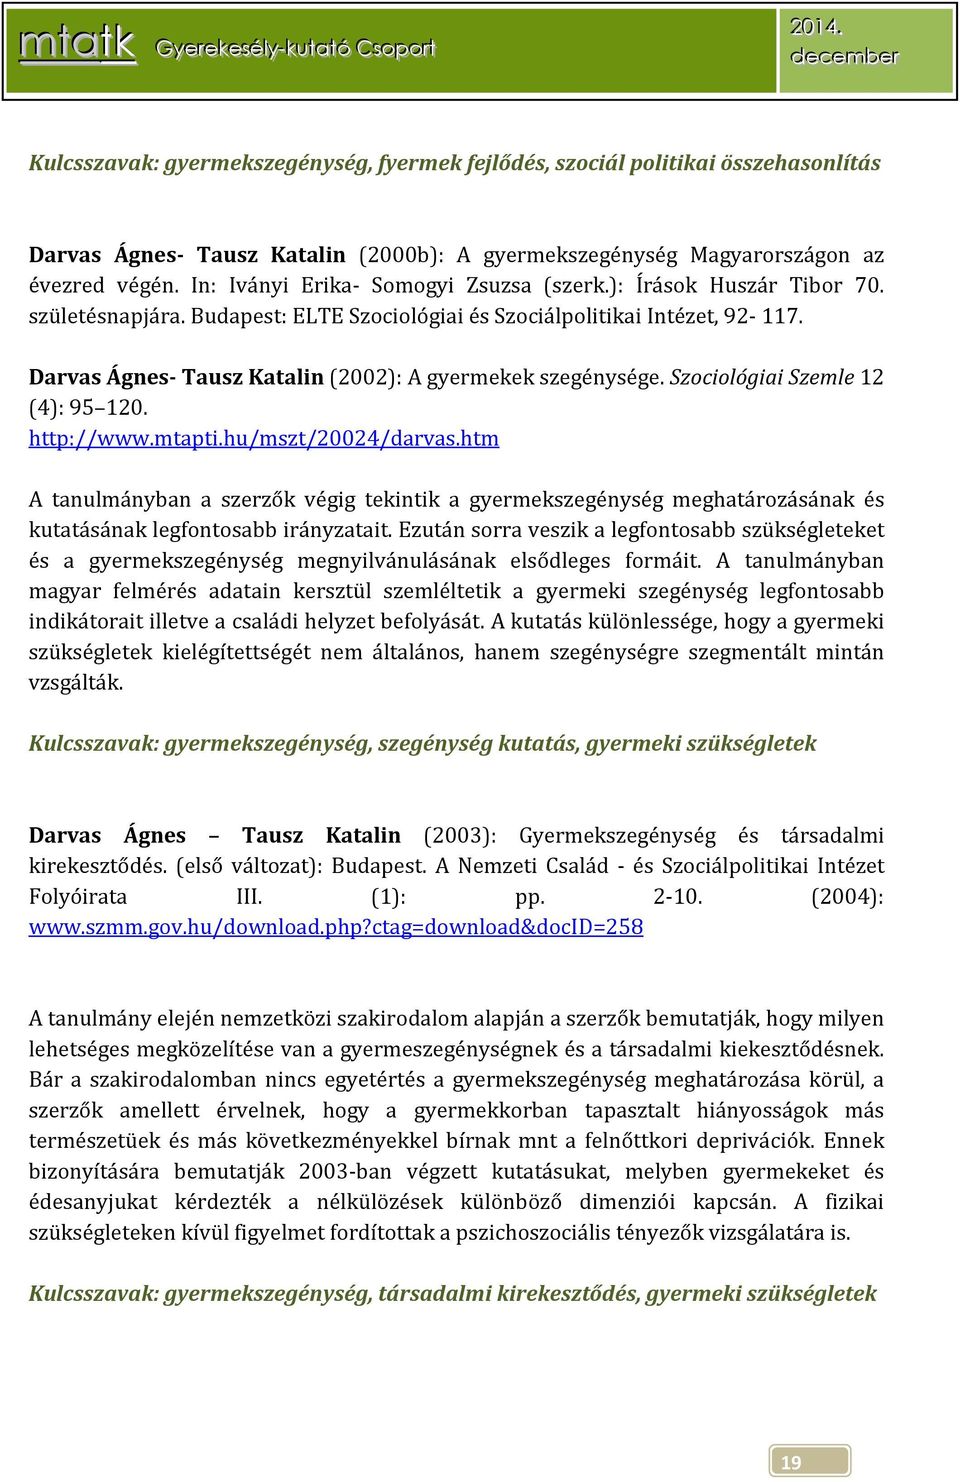 Darvas Ágnes- Tausz Katalin (2002): A gyermekek szegénysége. Szociológiai Szemle 12 (4): 95 120. http://www.mtapti.hu/mszt/20024/darvas.